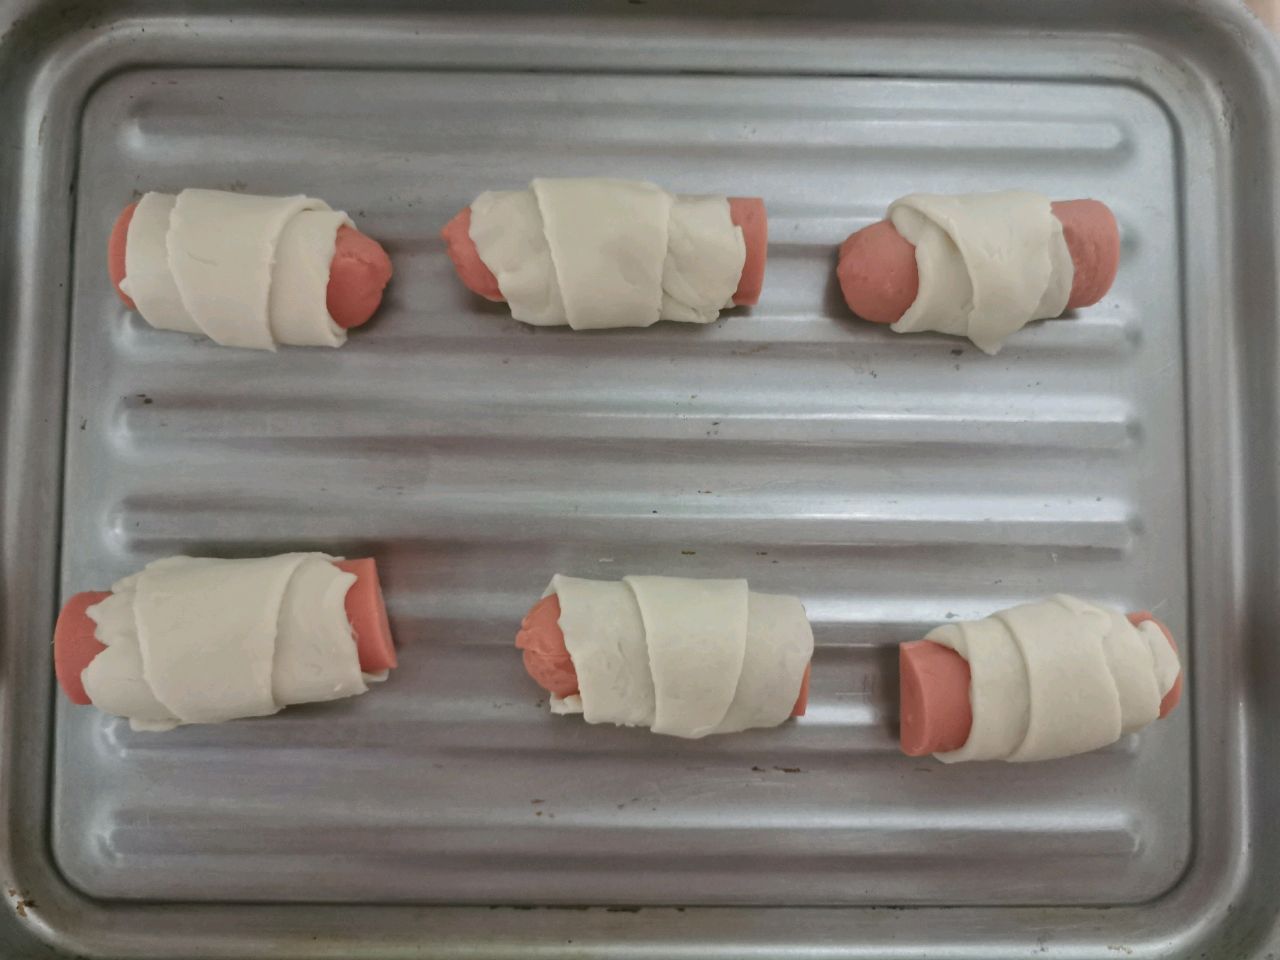 爱厨房的幸福之味: 香肠馒头卷 Sausage Steamed Buns